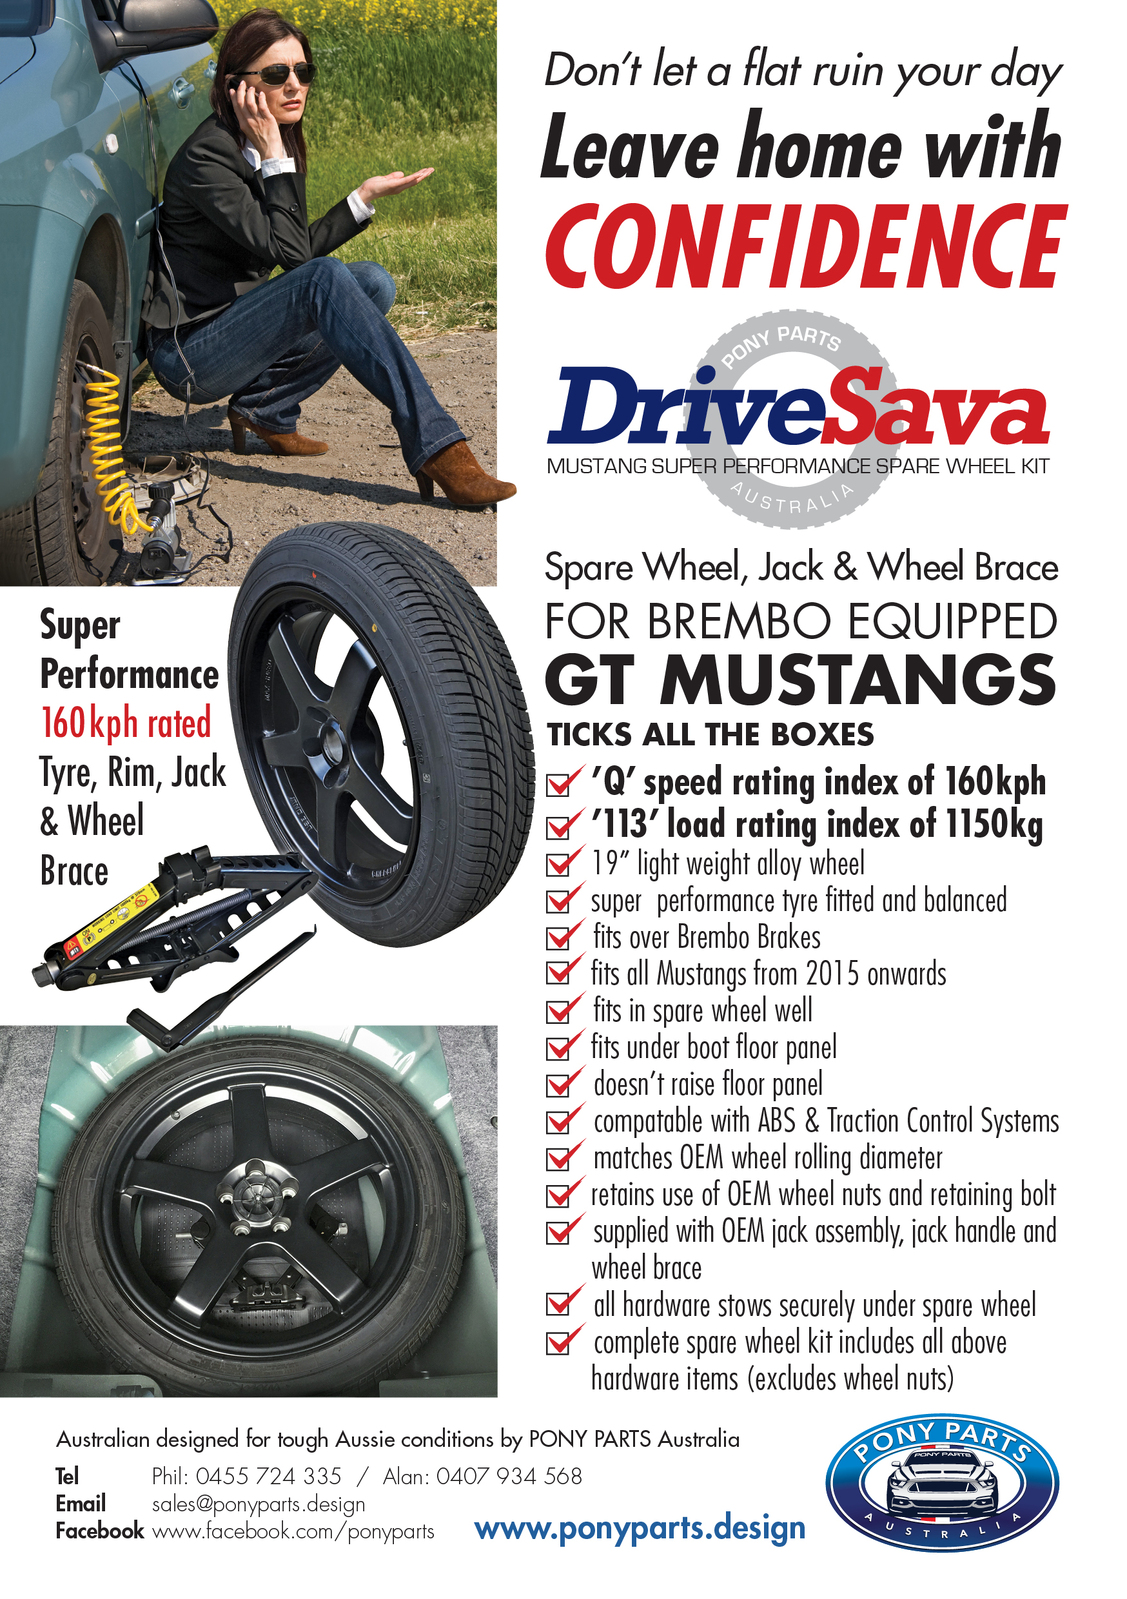 DriveSava -Mustang  Spare Wheel  - WINTER SPECIAL